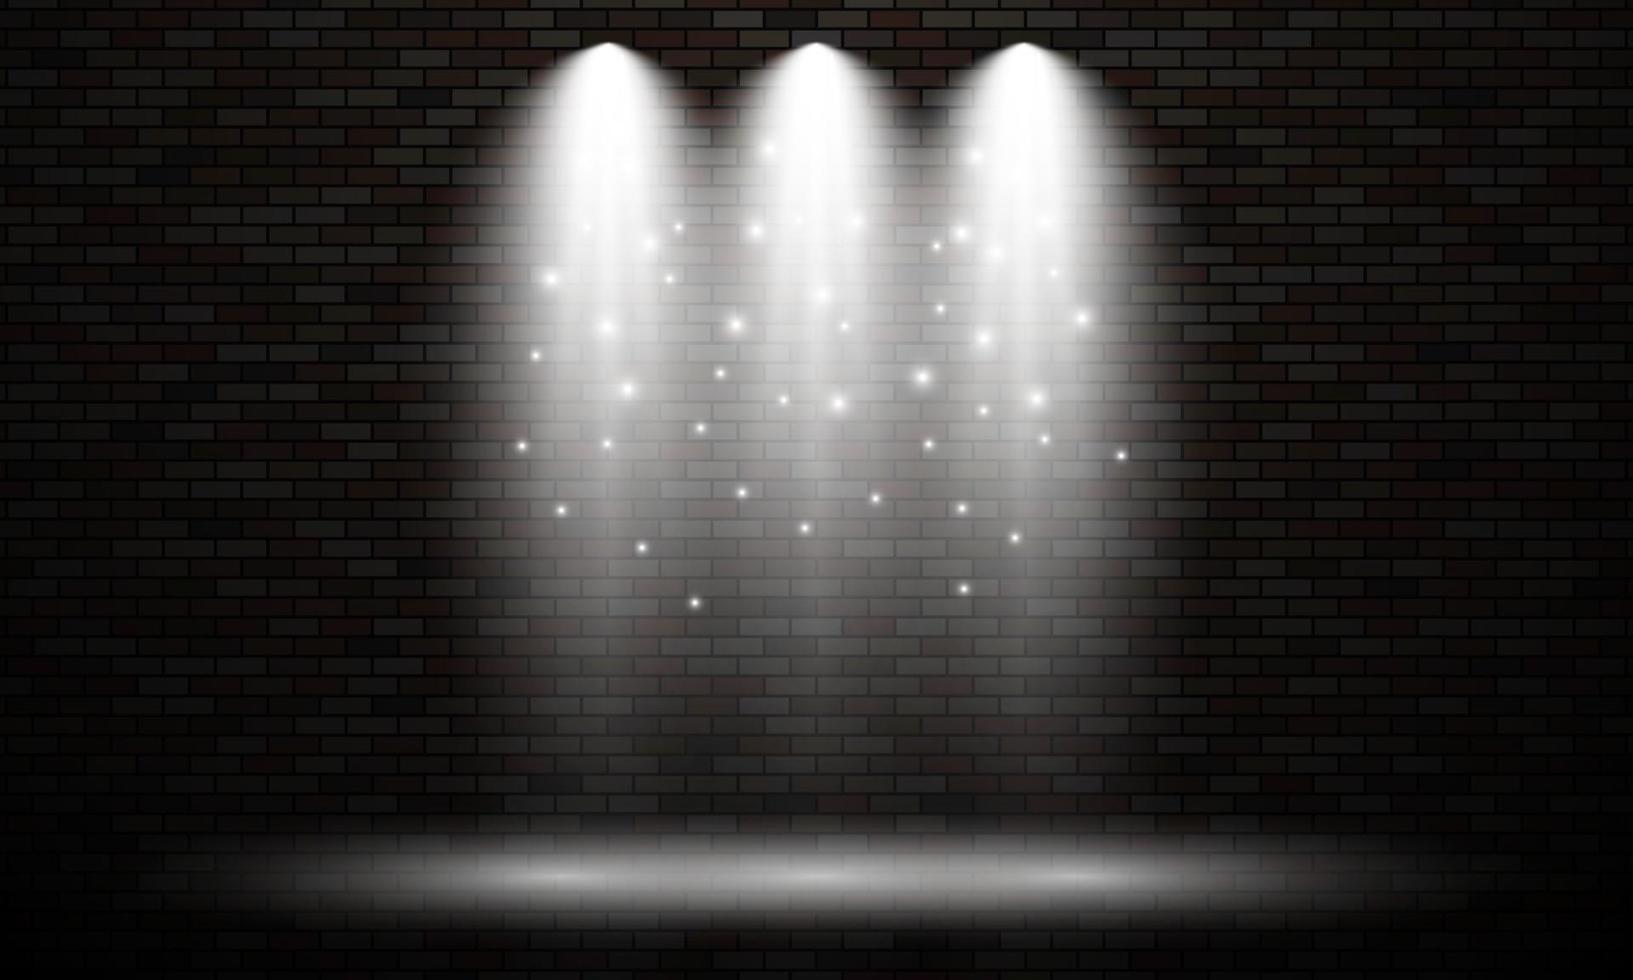 mur de briques avec spots lumineux. trois effets de lumières isolés de couleur blanche sur fond de mur de briques sombres. illustration vectorielle vecteur